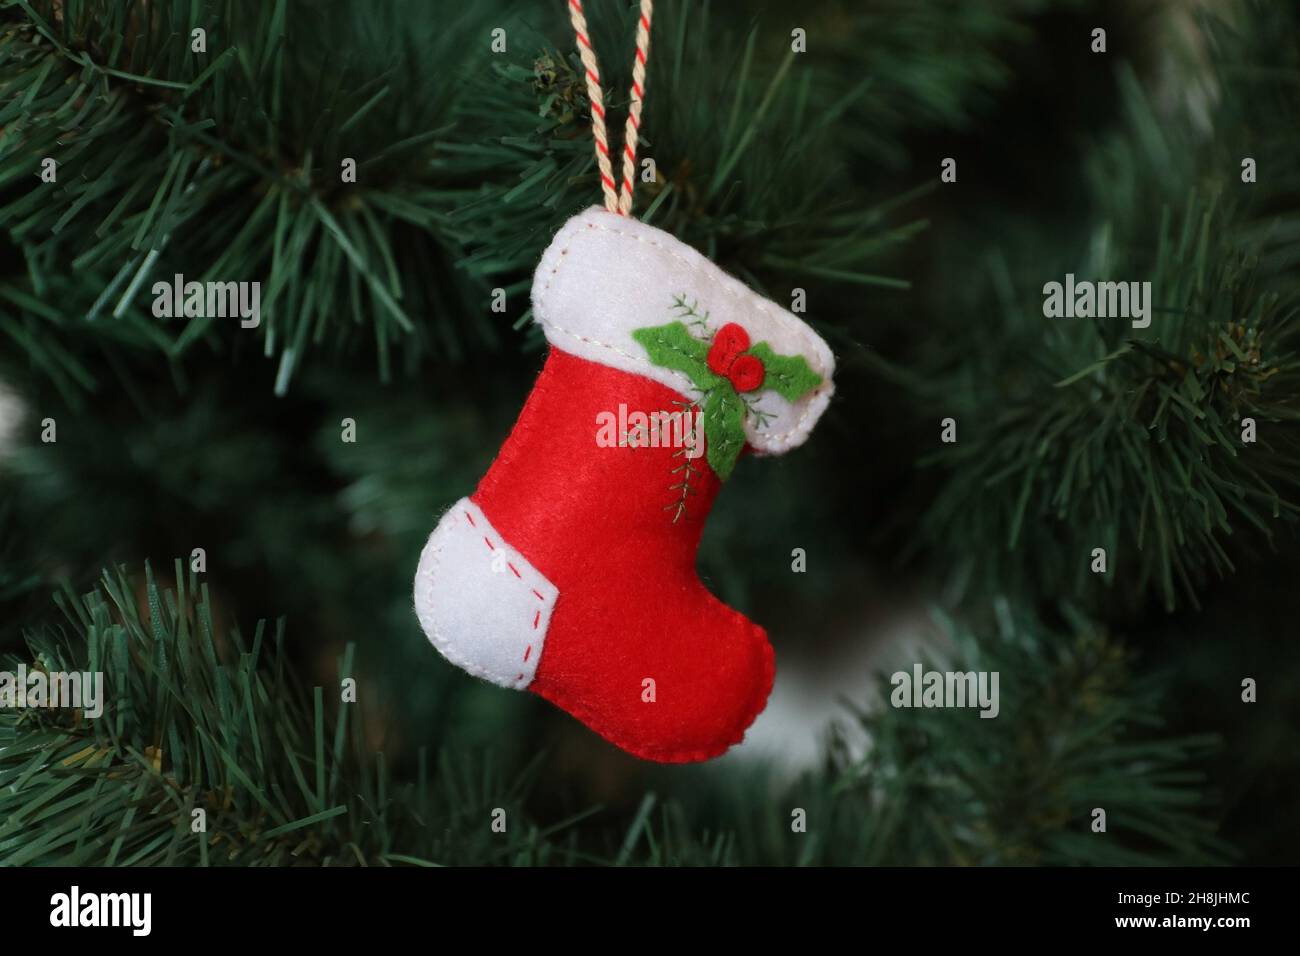 Christmas sock hanging on a Christmas tree. Stock Photo